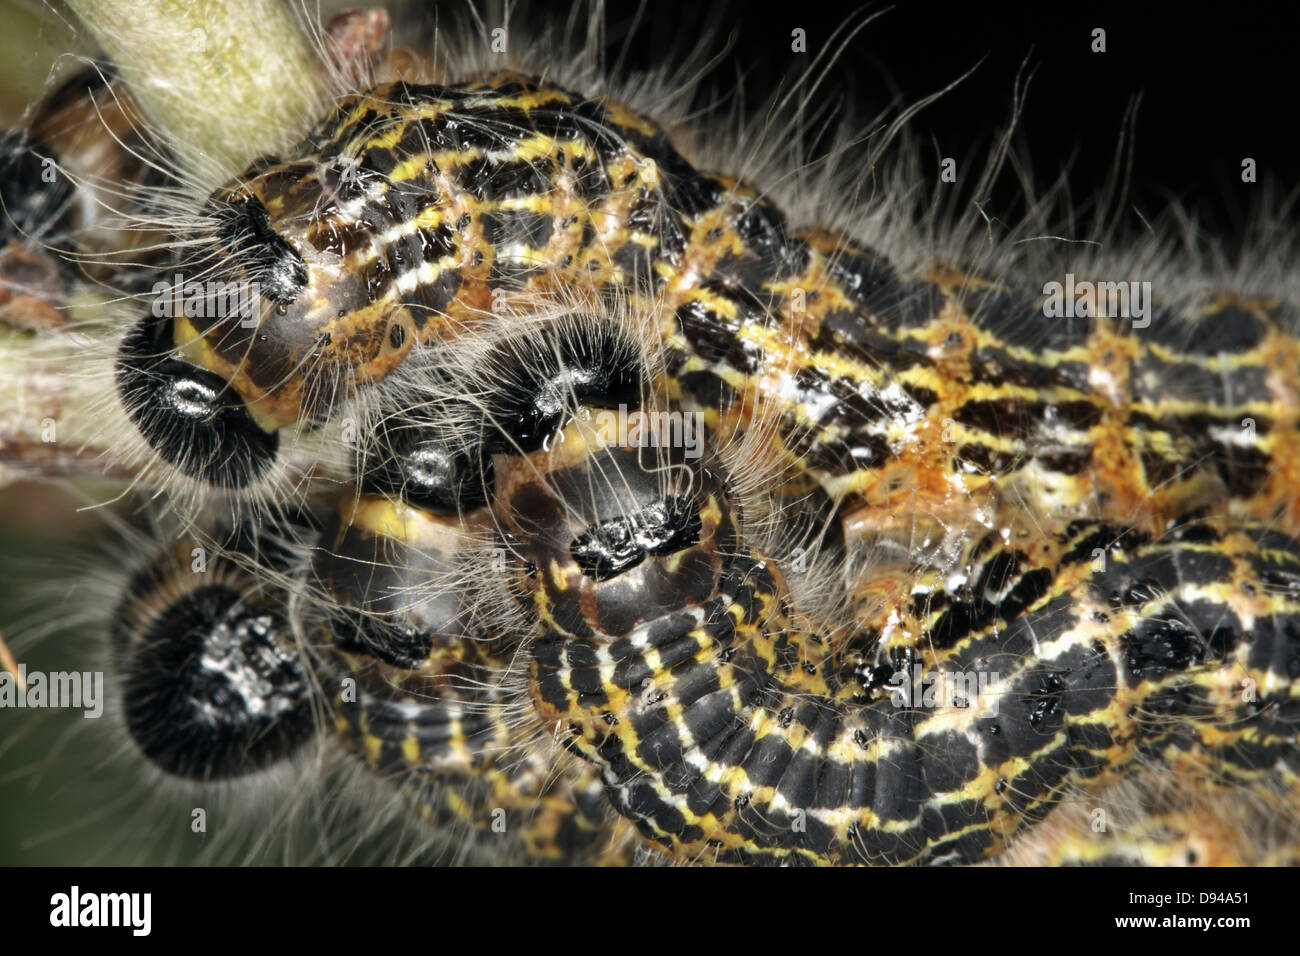 Caterpillars, close-up. Stock Photo